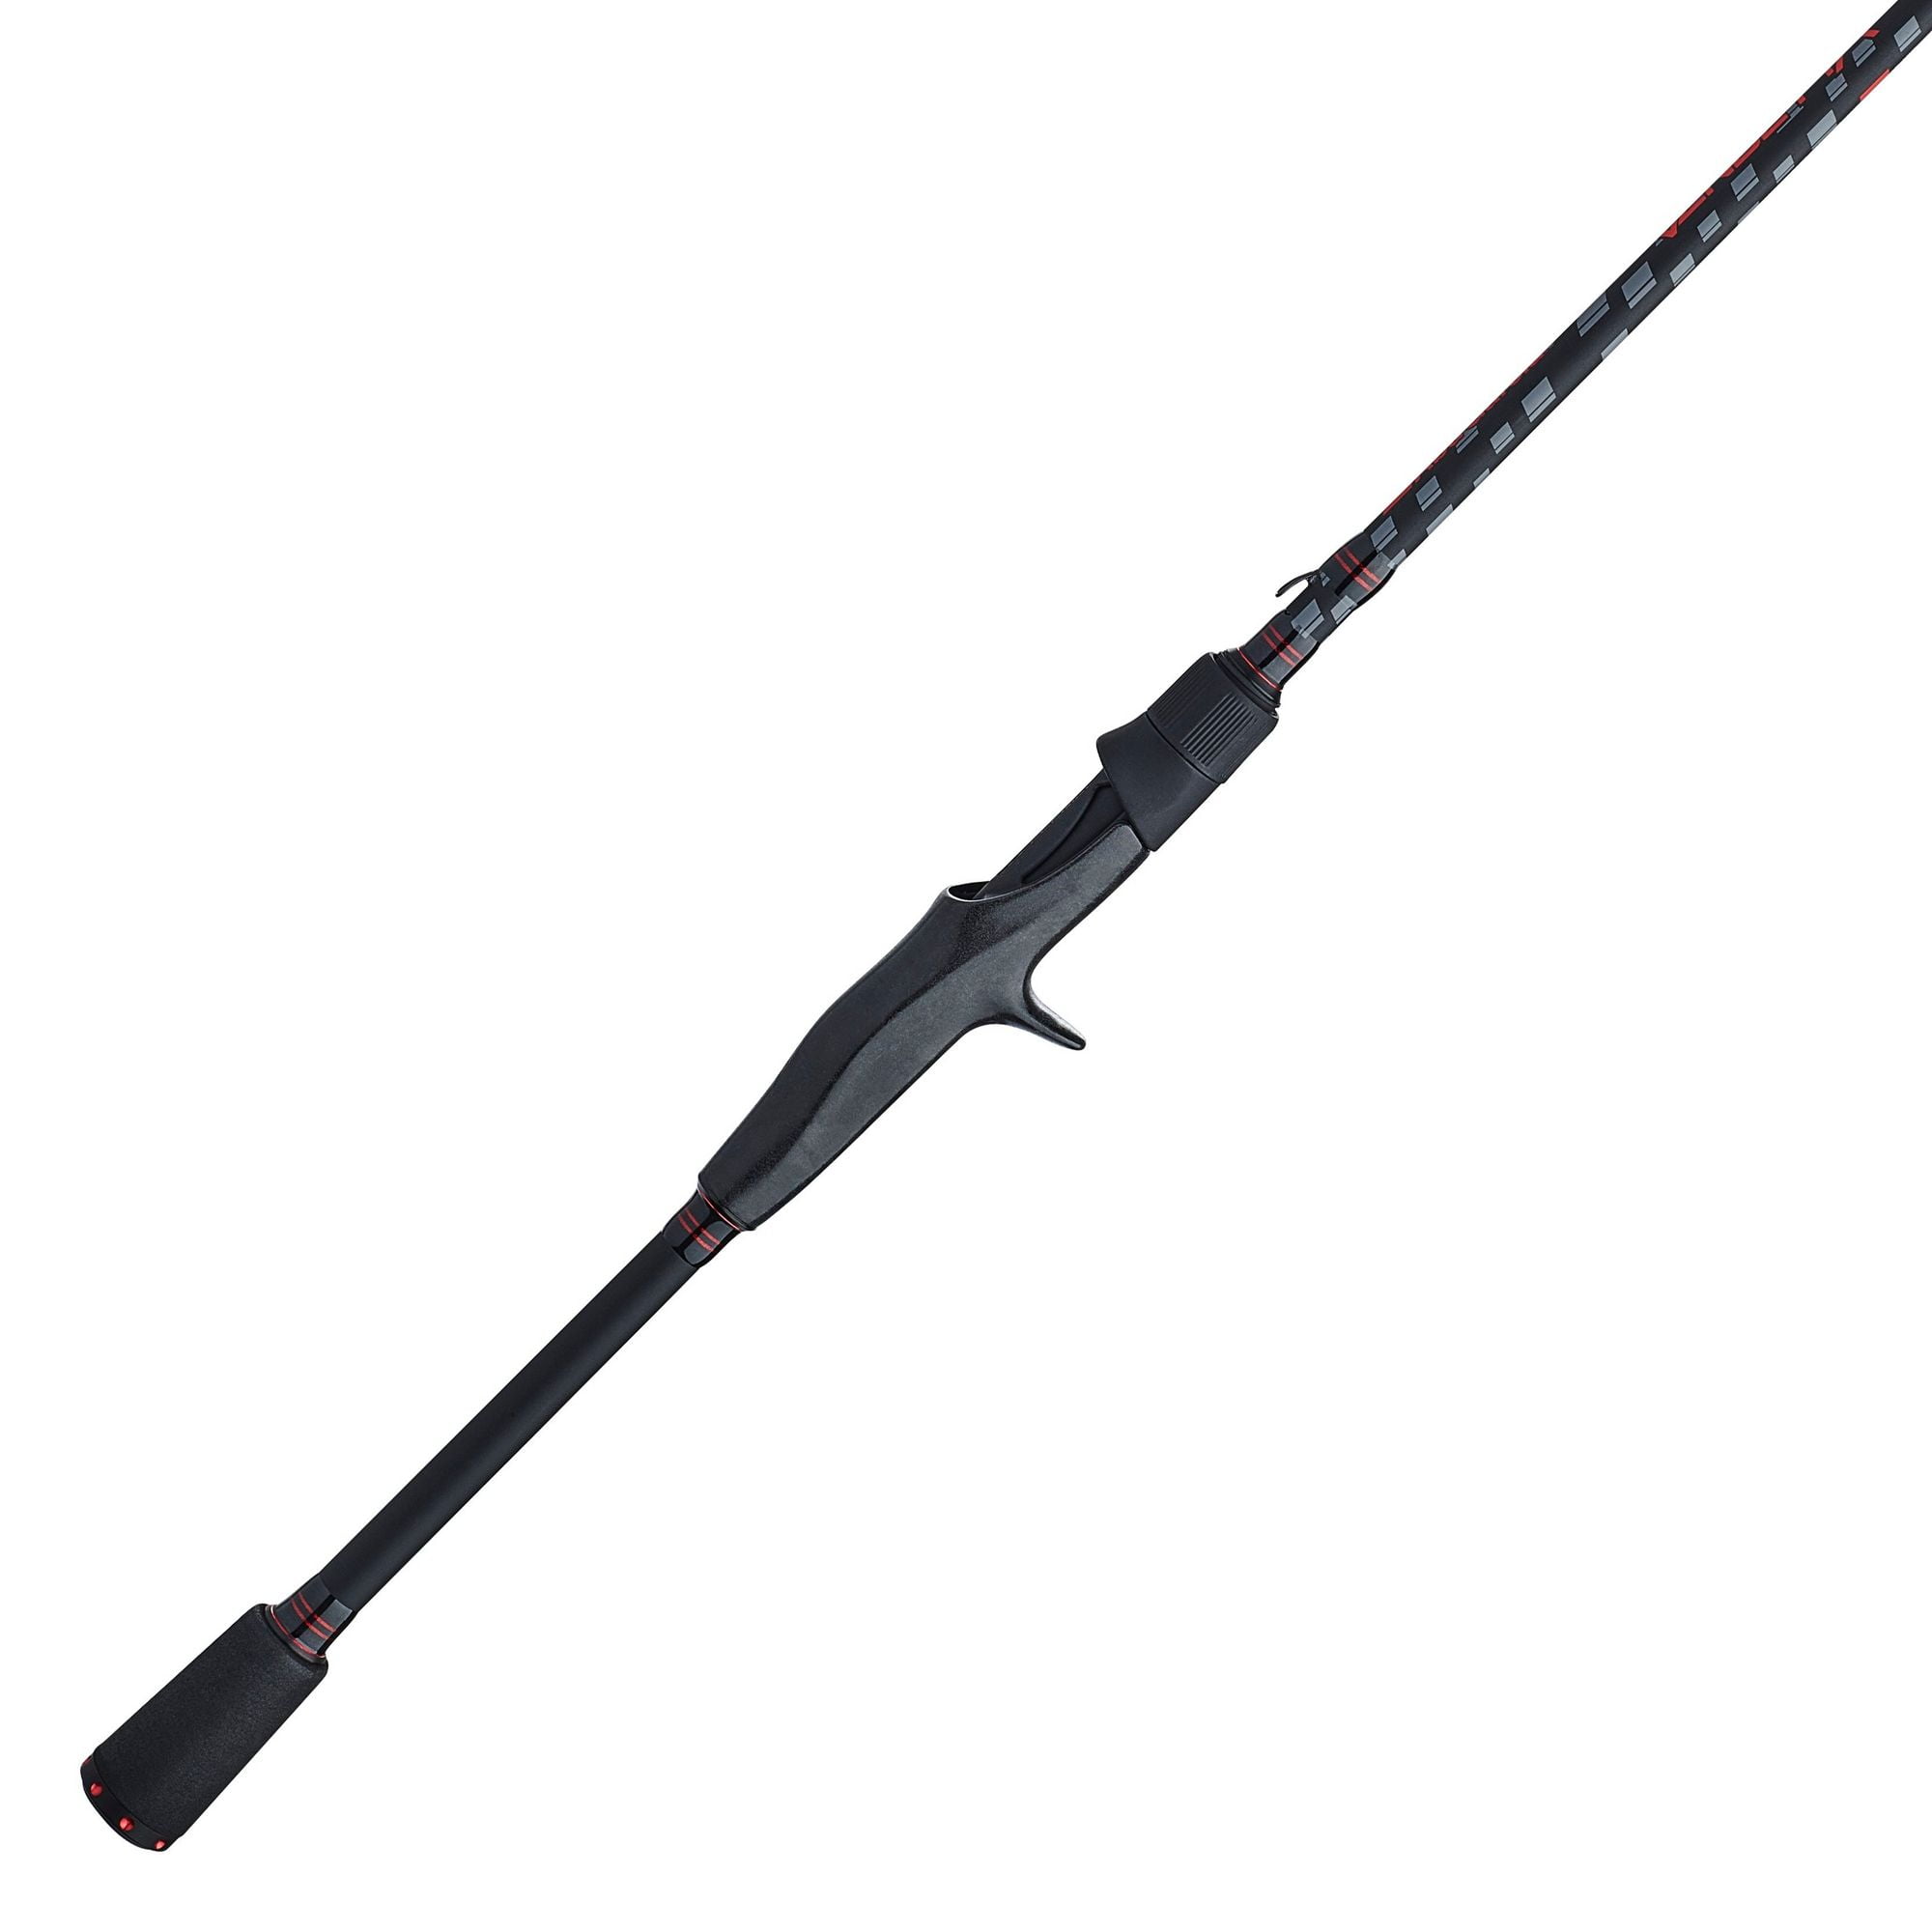 Abu Garcia 6'3” Vendetta Casting Fishing Rod, 1 Piece Rod 